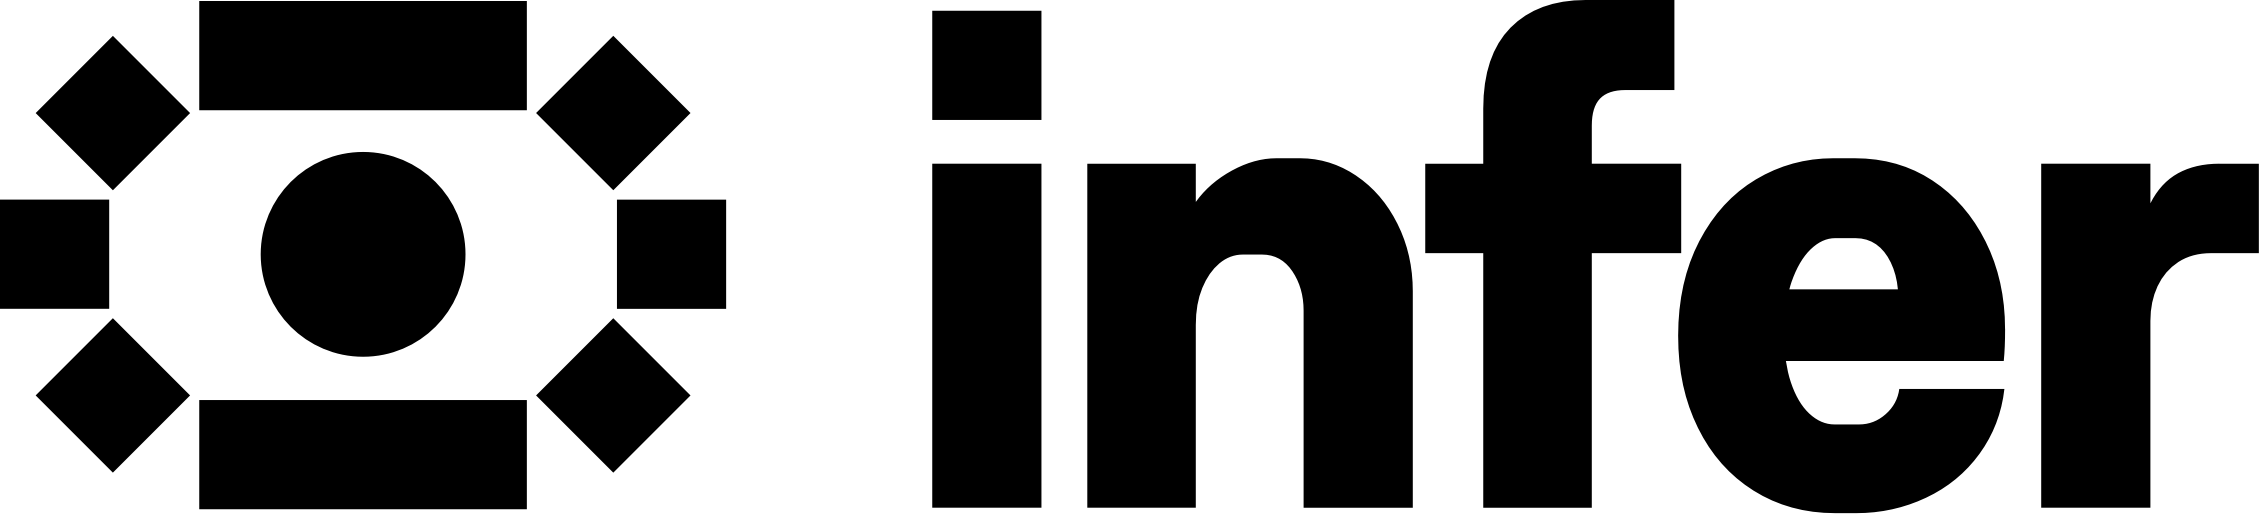 Infer logo